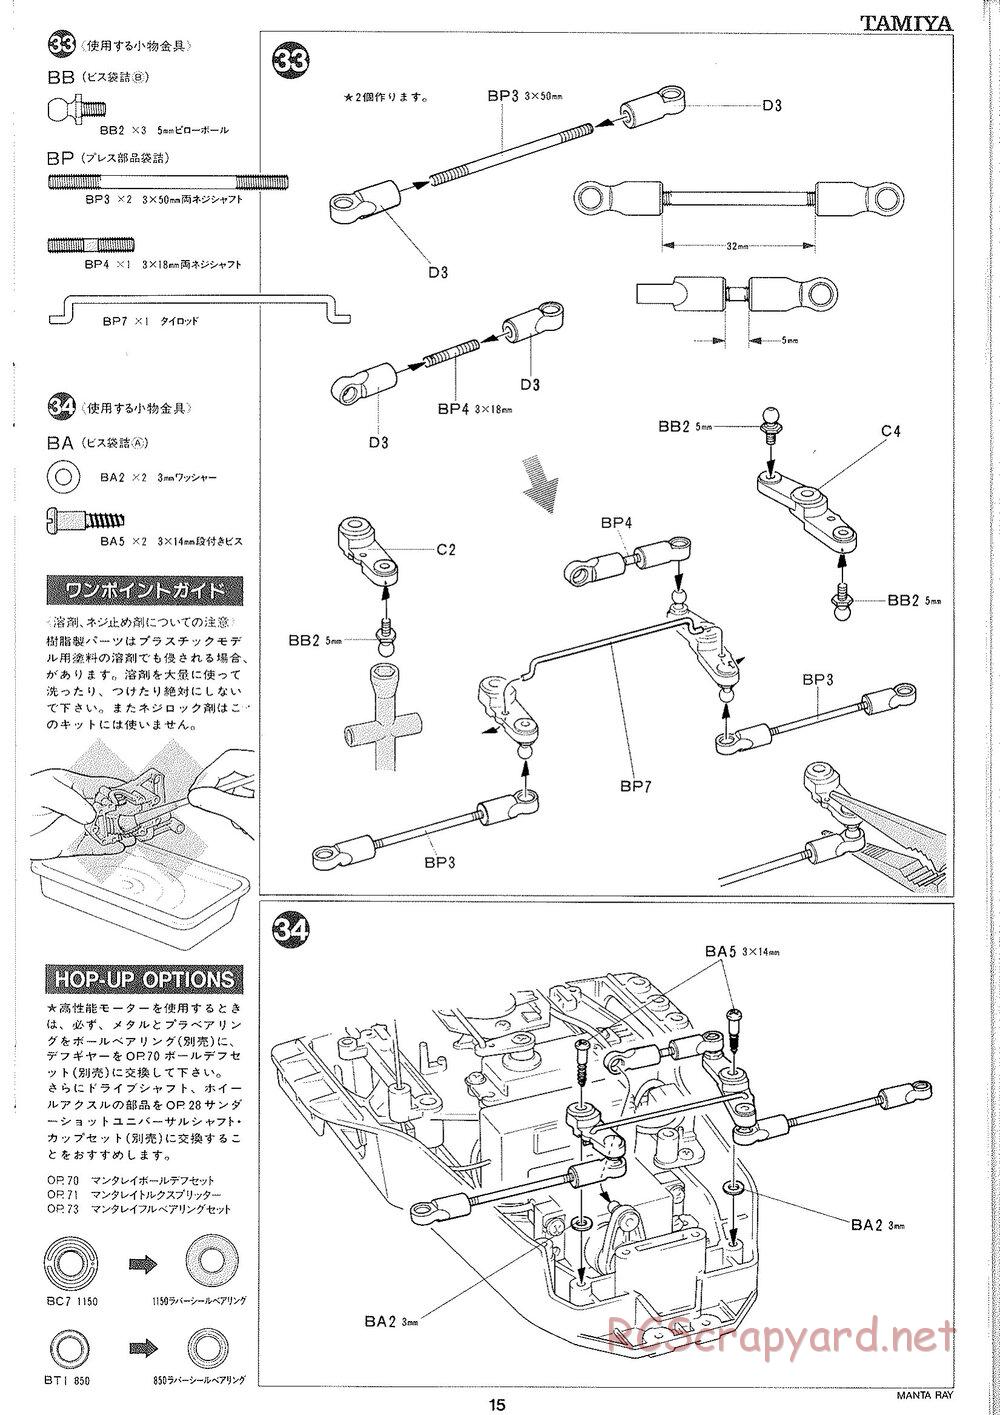 Tamiya - Manta Ray 2005 - DF-01 Chassis - Manual - Page 16